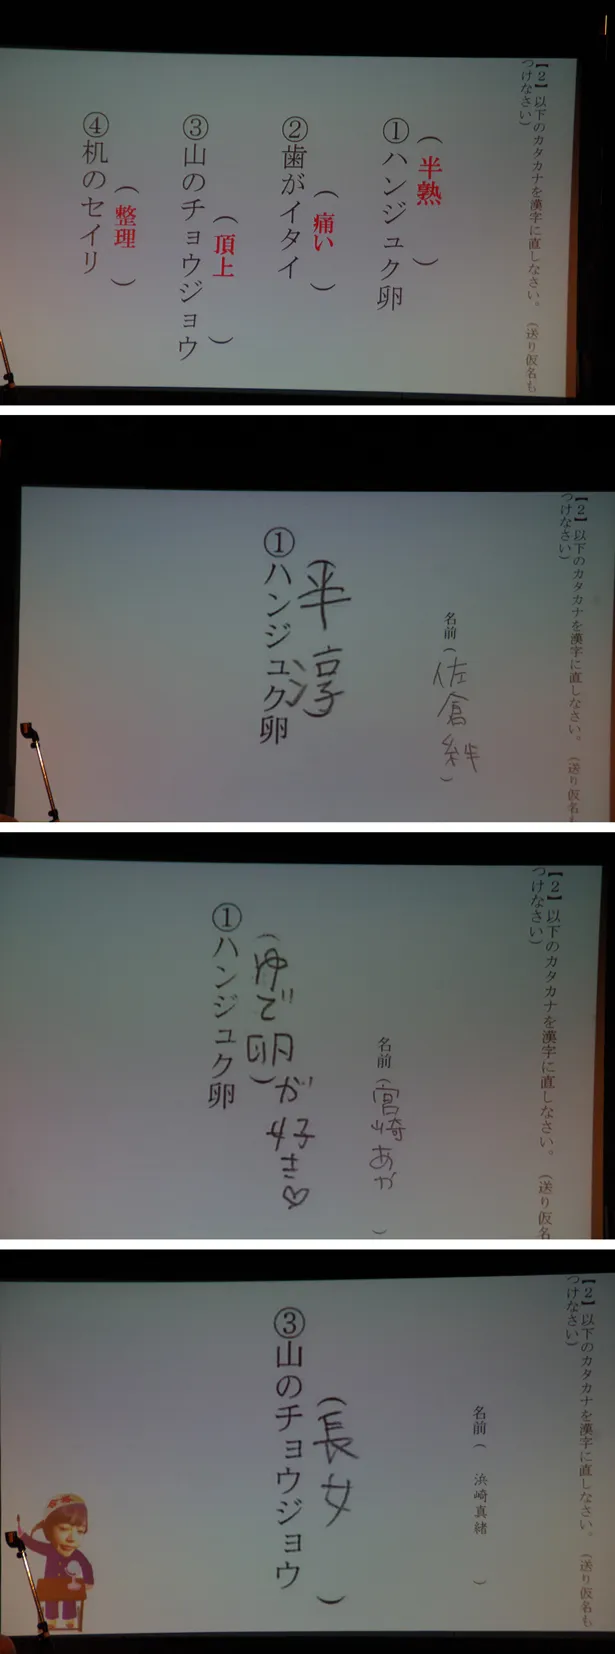 『国語』2問目は、カタカナを漢字に直す問題